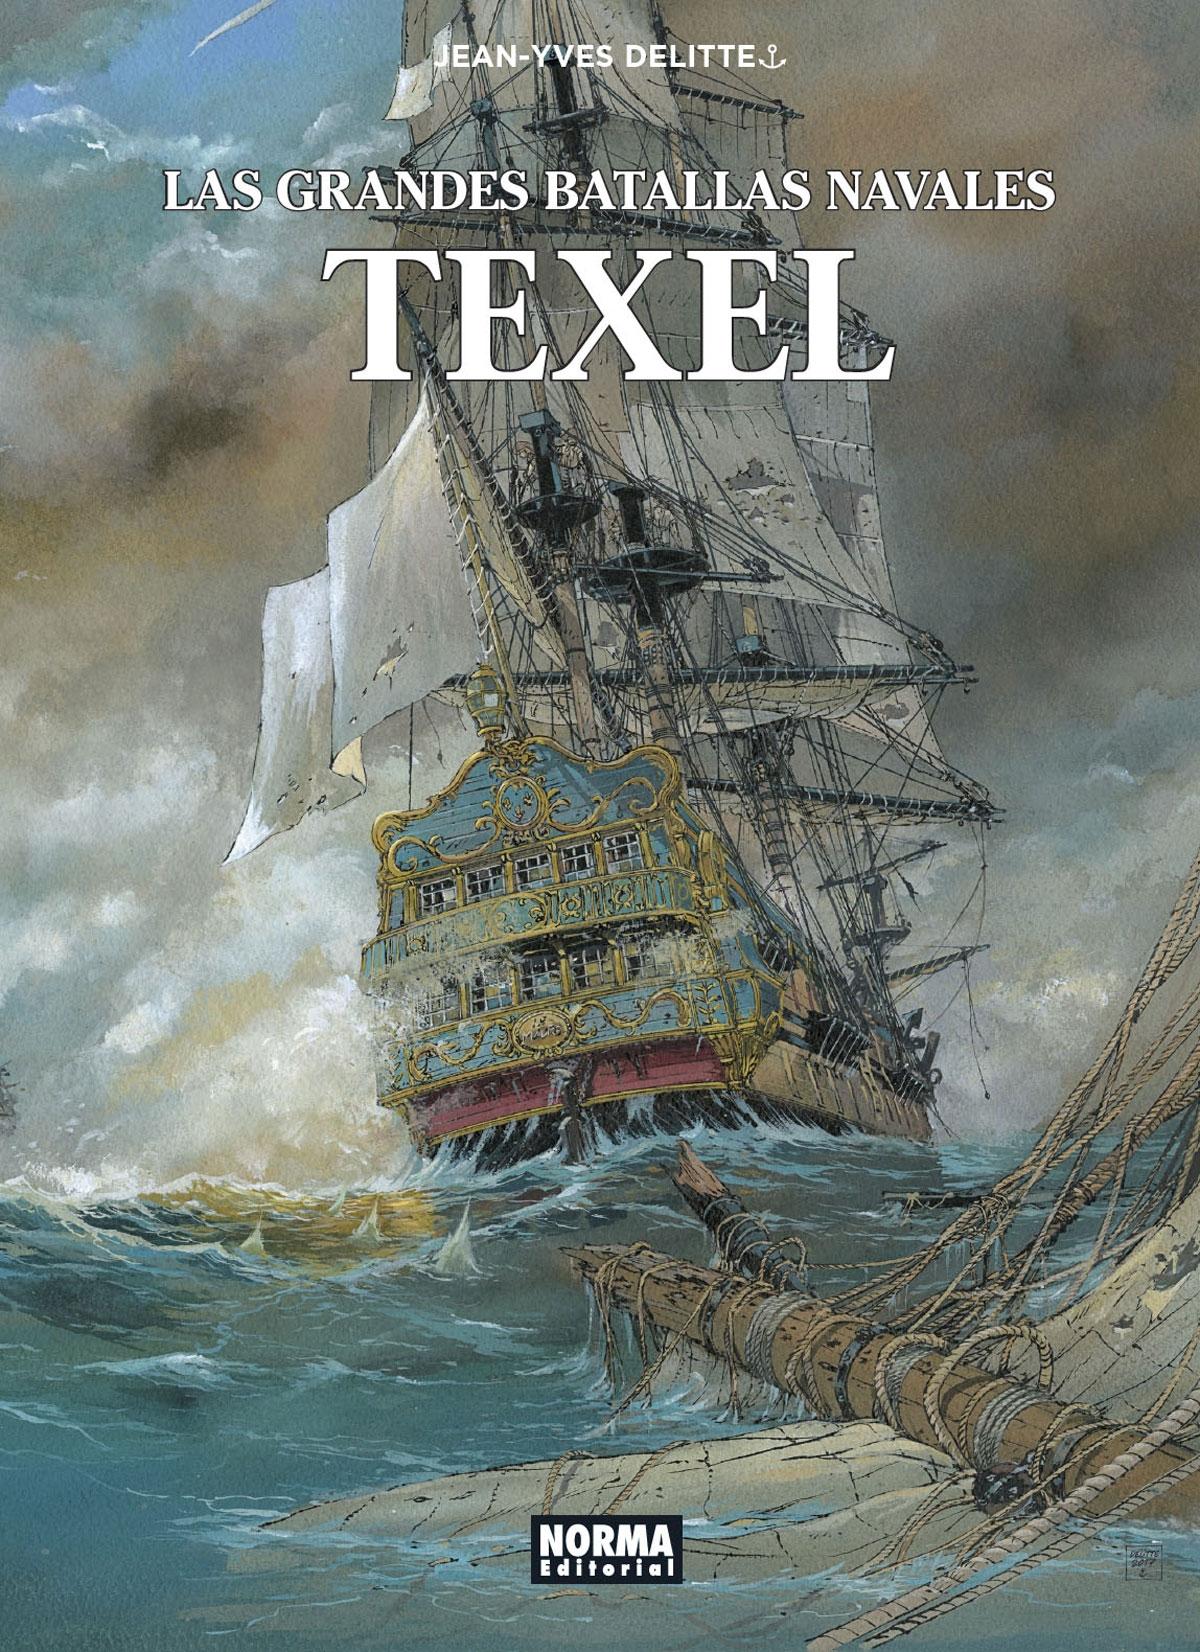 Las Grandes Batallas Navales 9 "Texel"